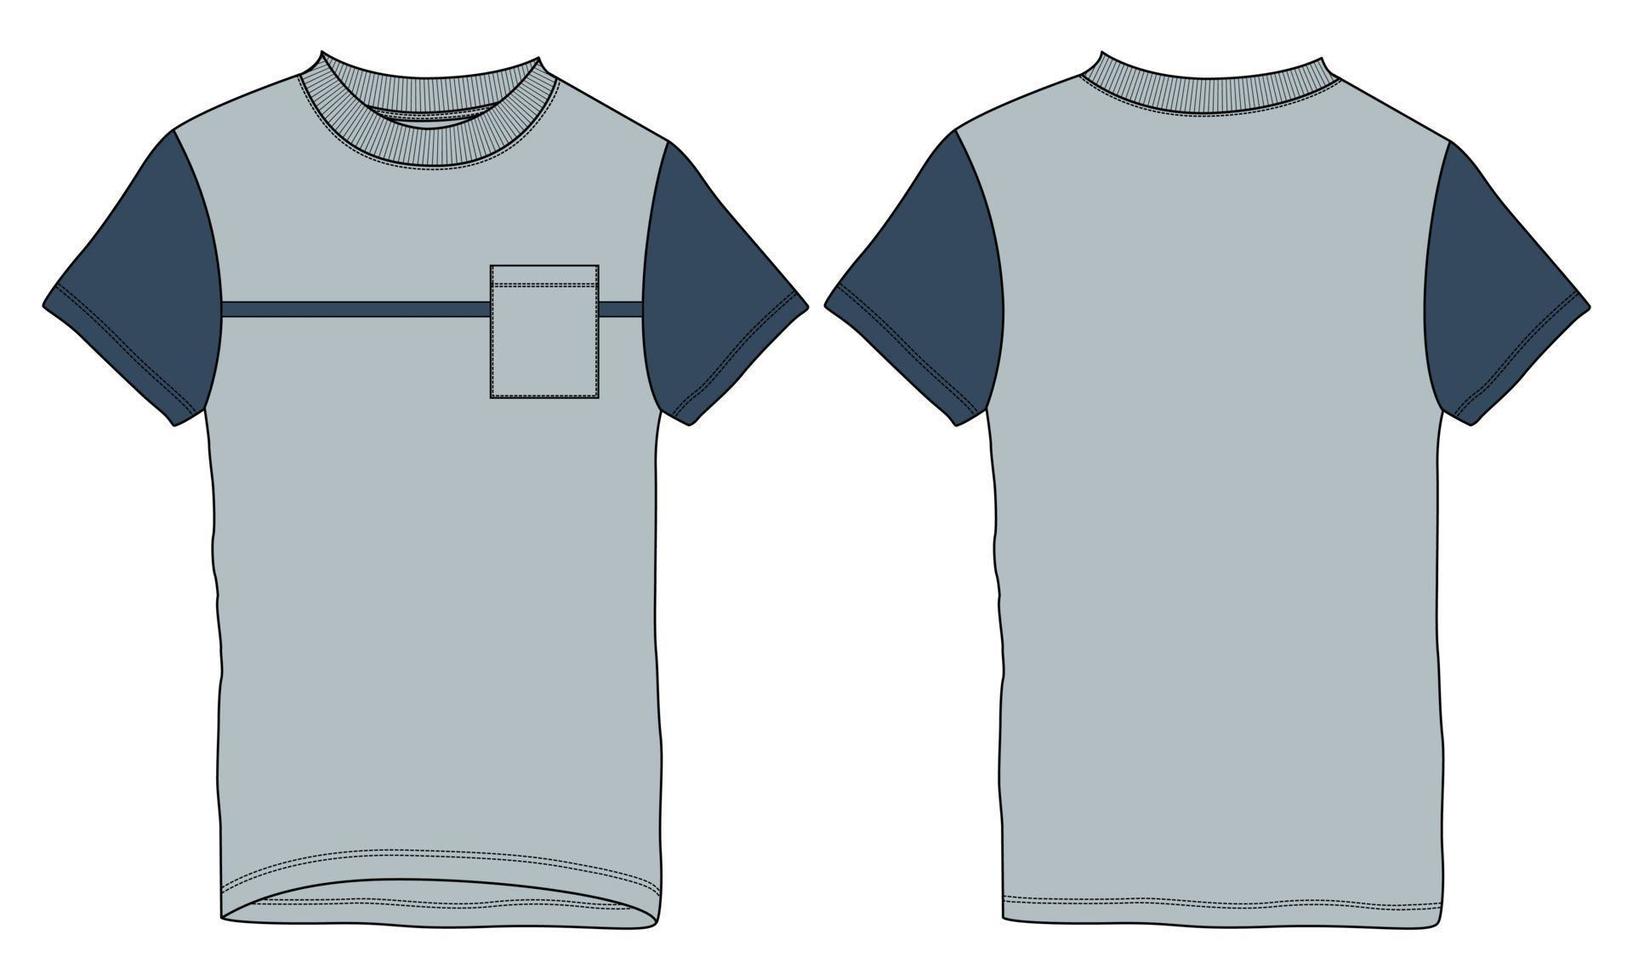 kurze ärmel mit tasche t-shirt technische mode flache skizze vektor illustration vorlage vorder- und rückansichten.